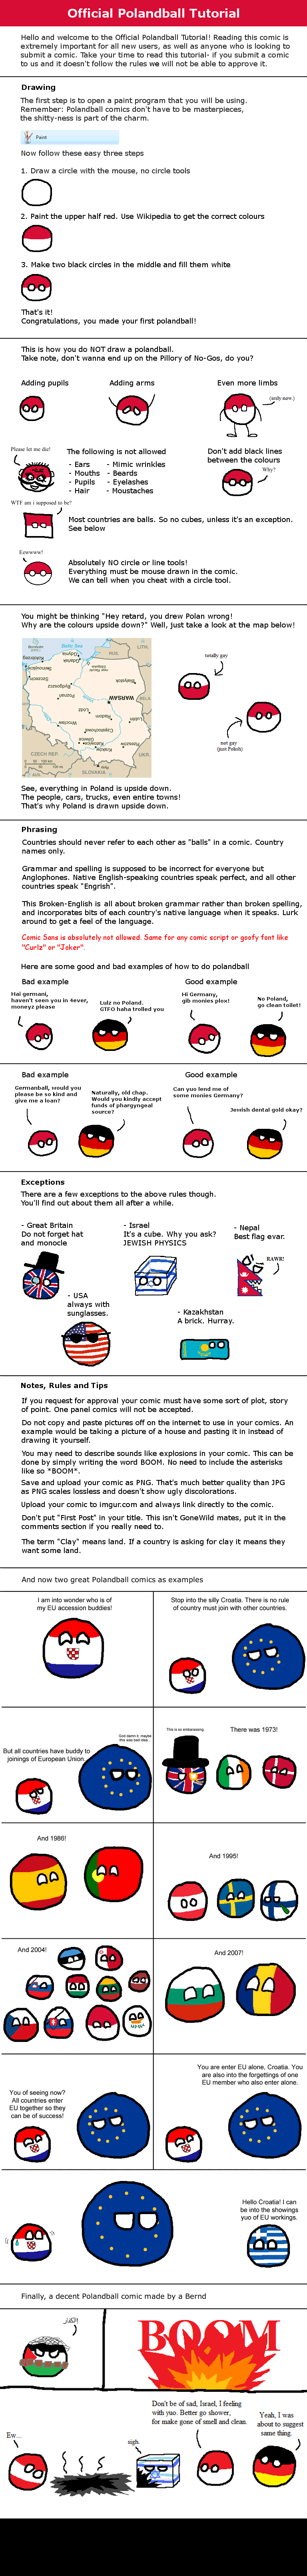 How to make a Polandball comic